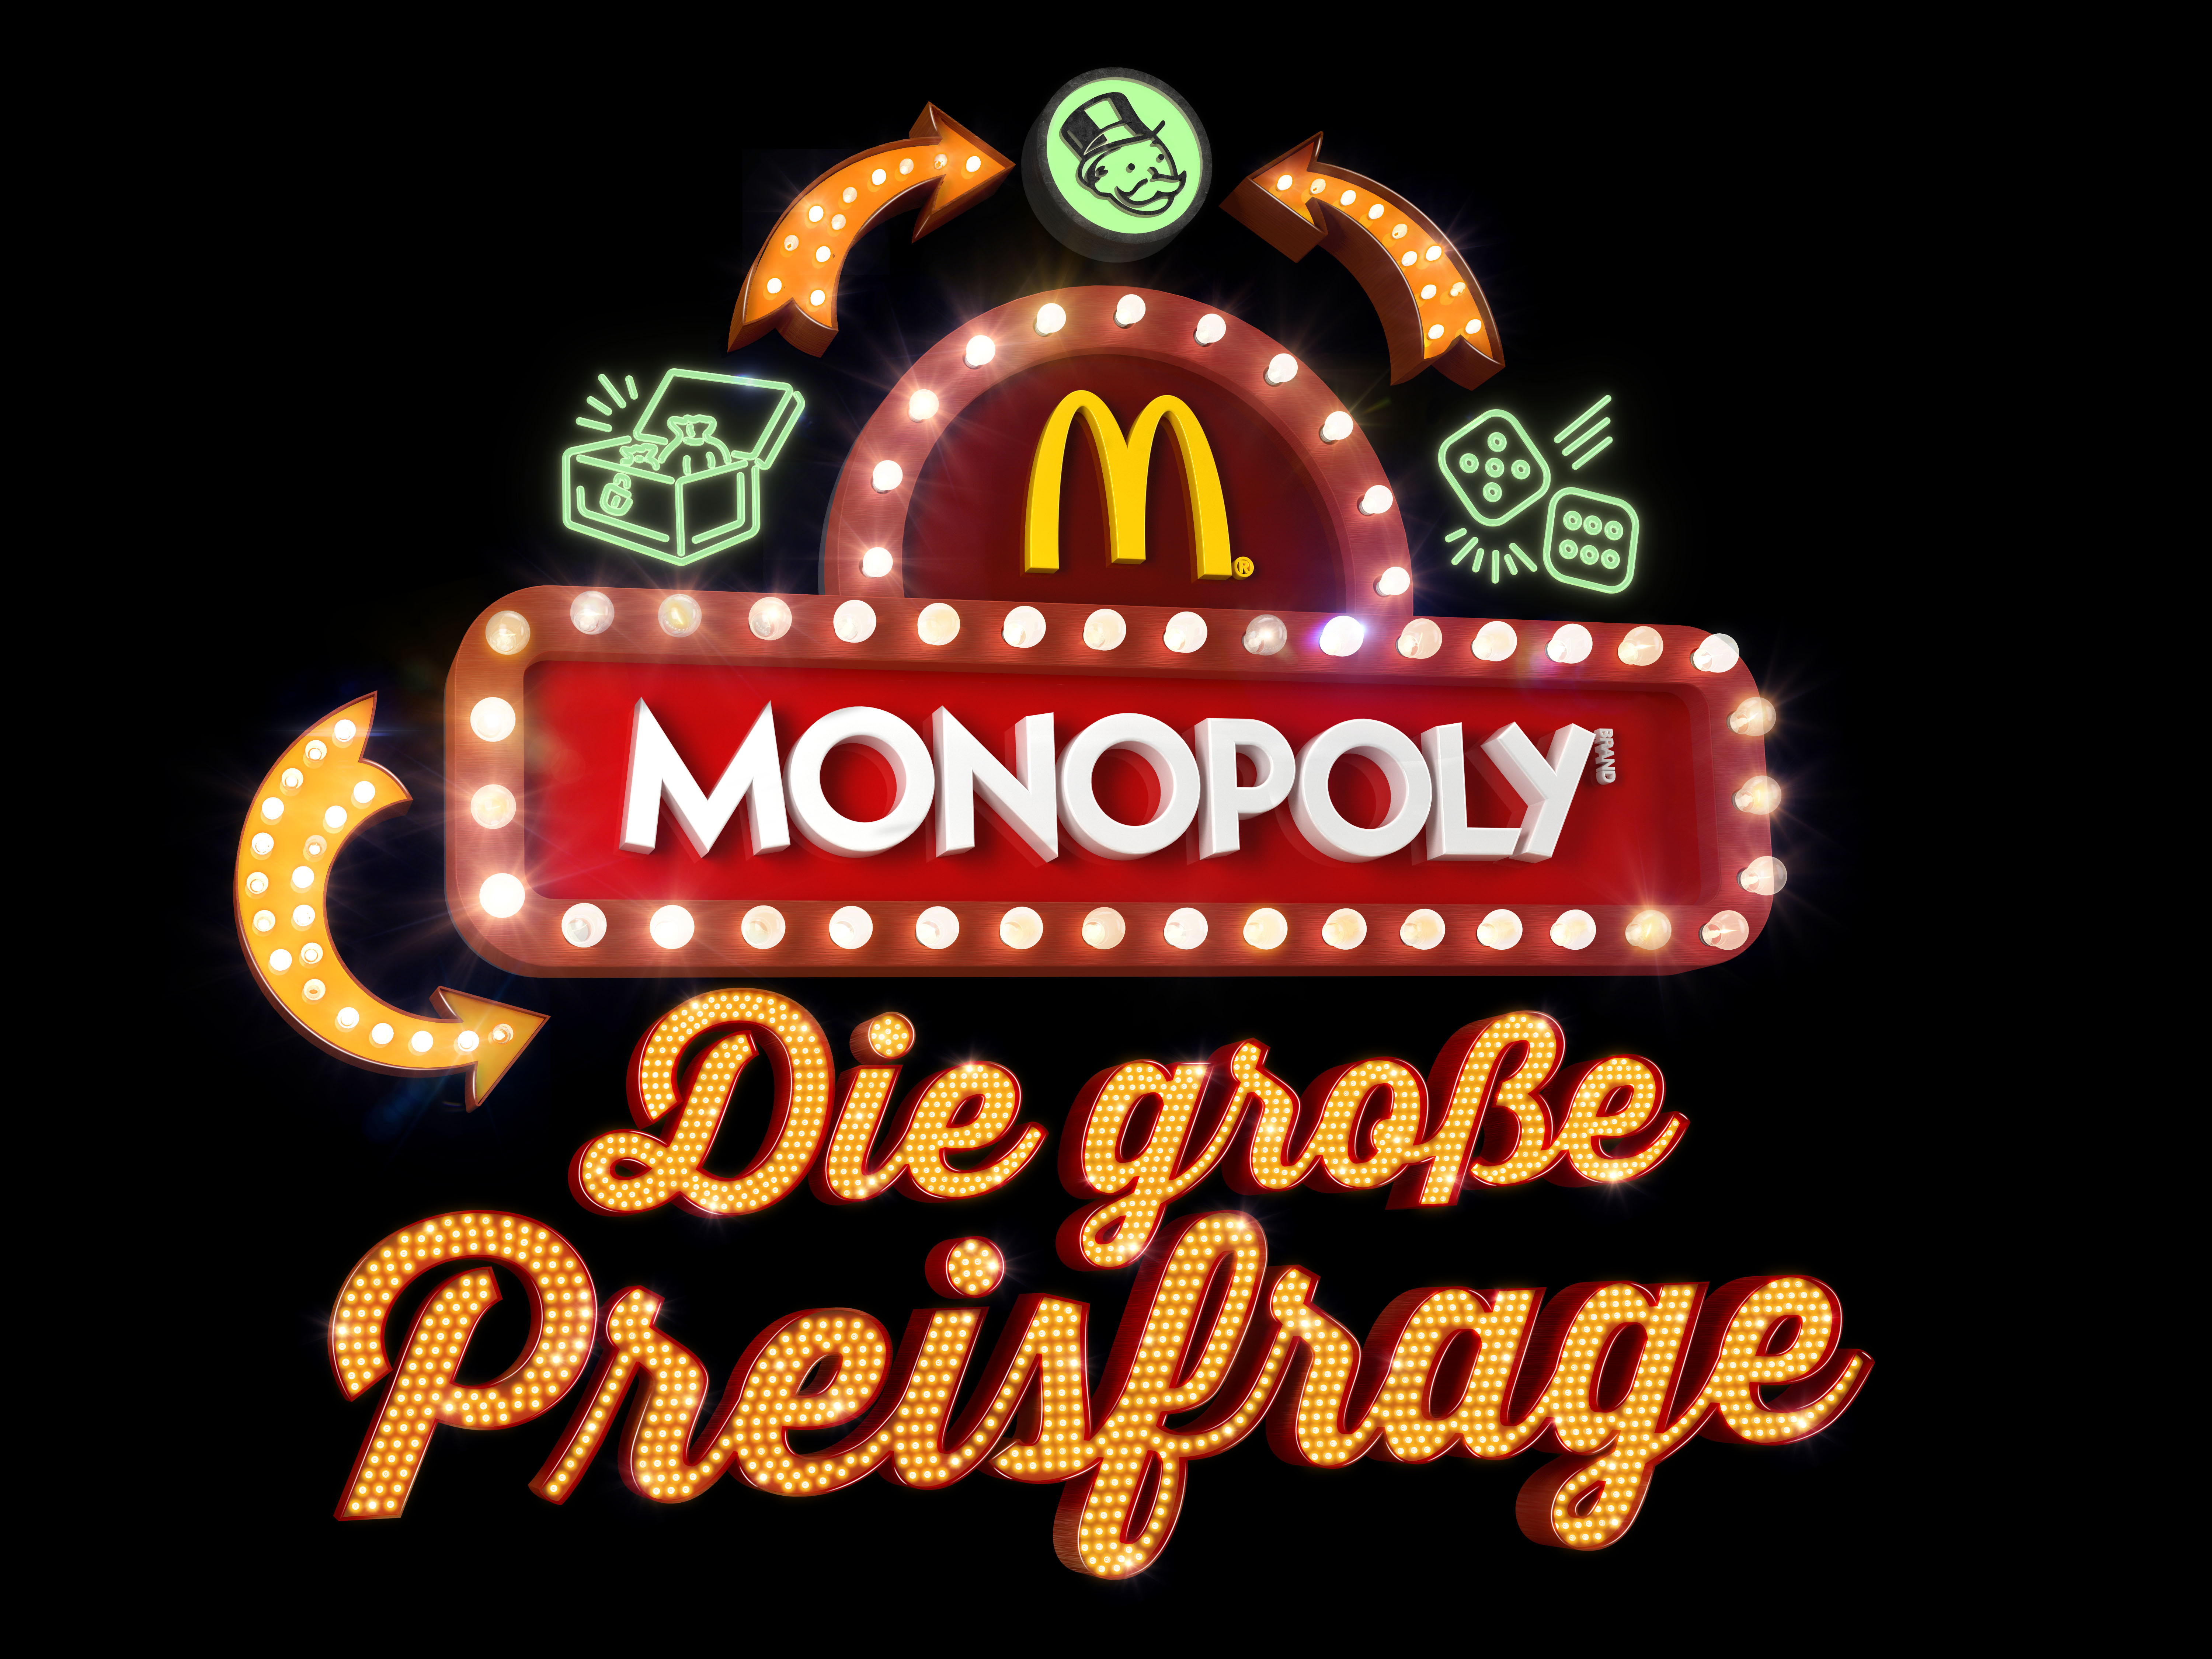 Monopoly - Preisfrage